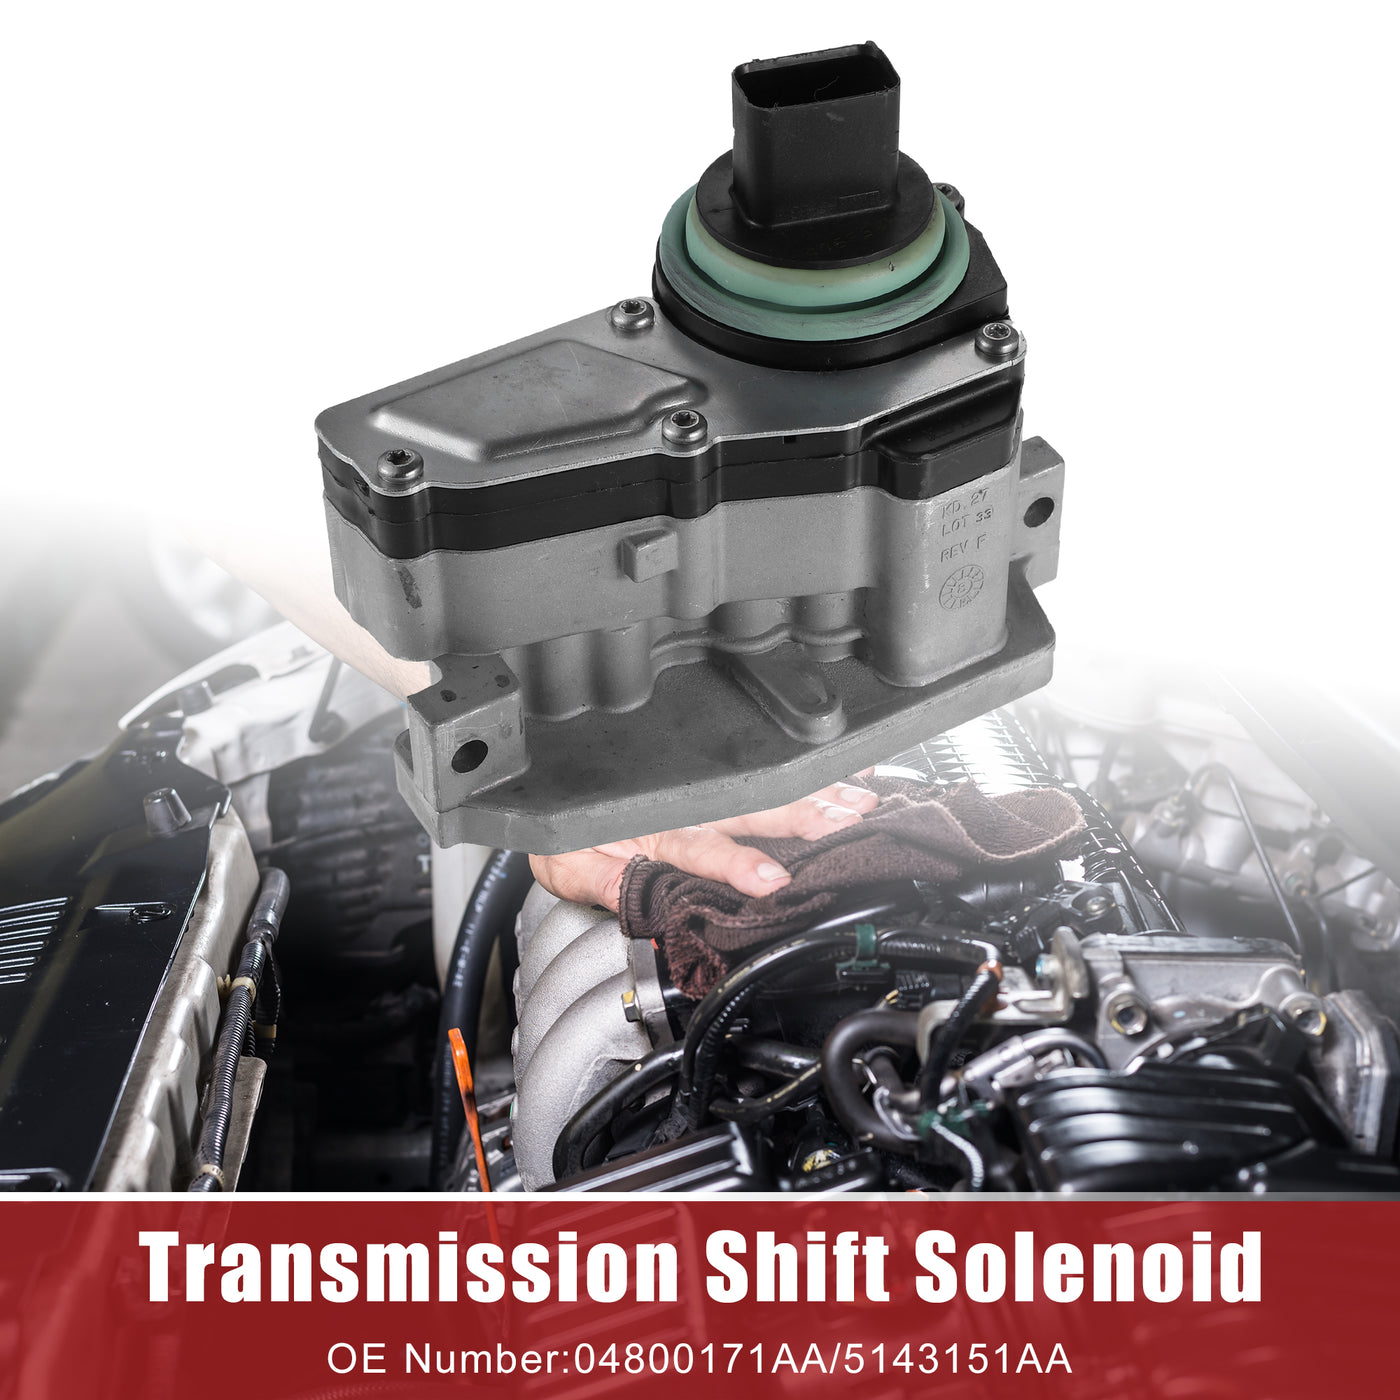 ACROPIX Transmission Shift Solenoid Fit for Chrysler 300 V6 - 1 Pcs Black